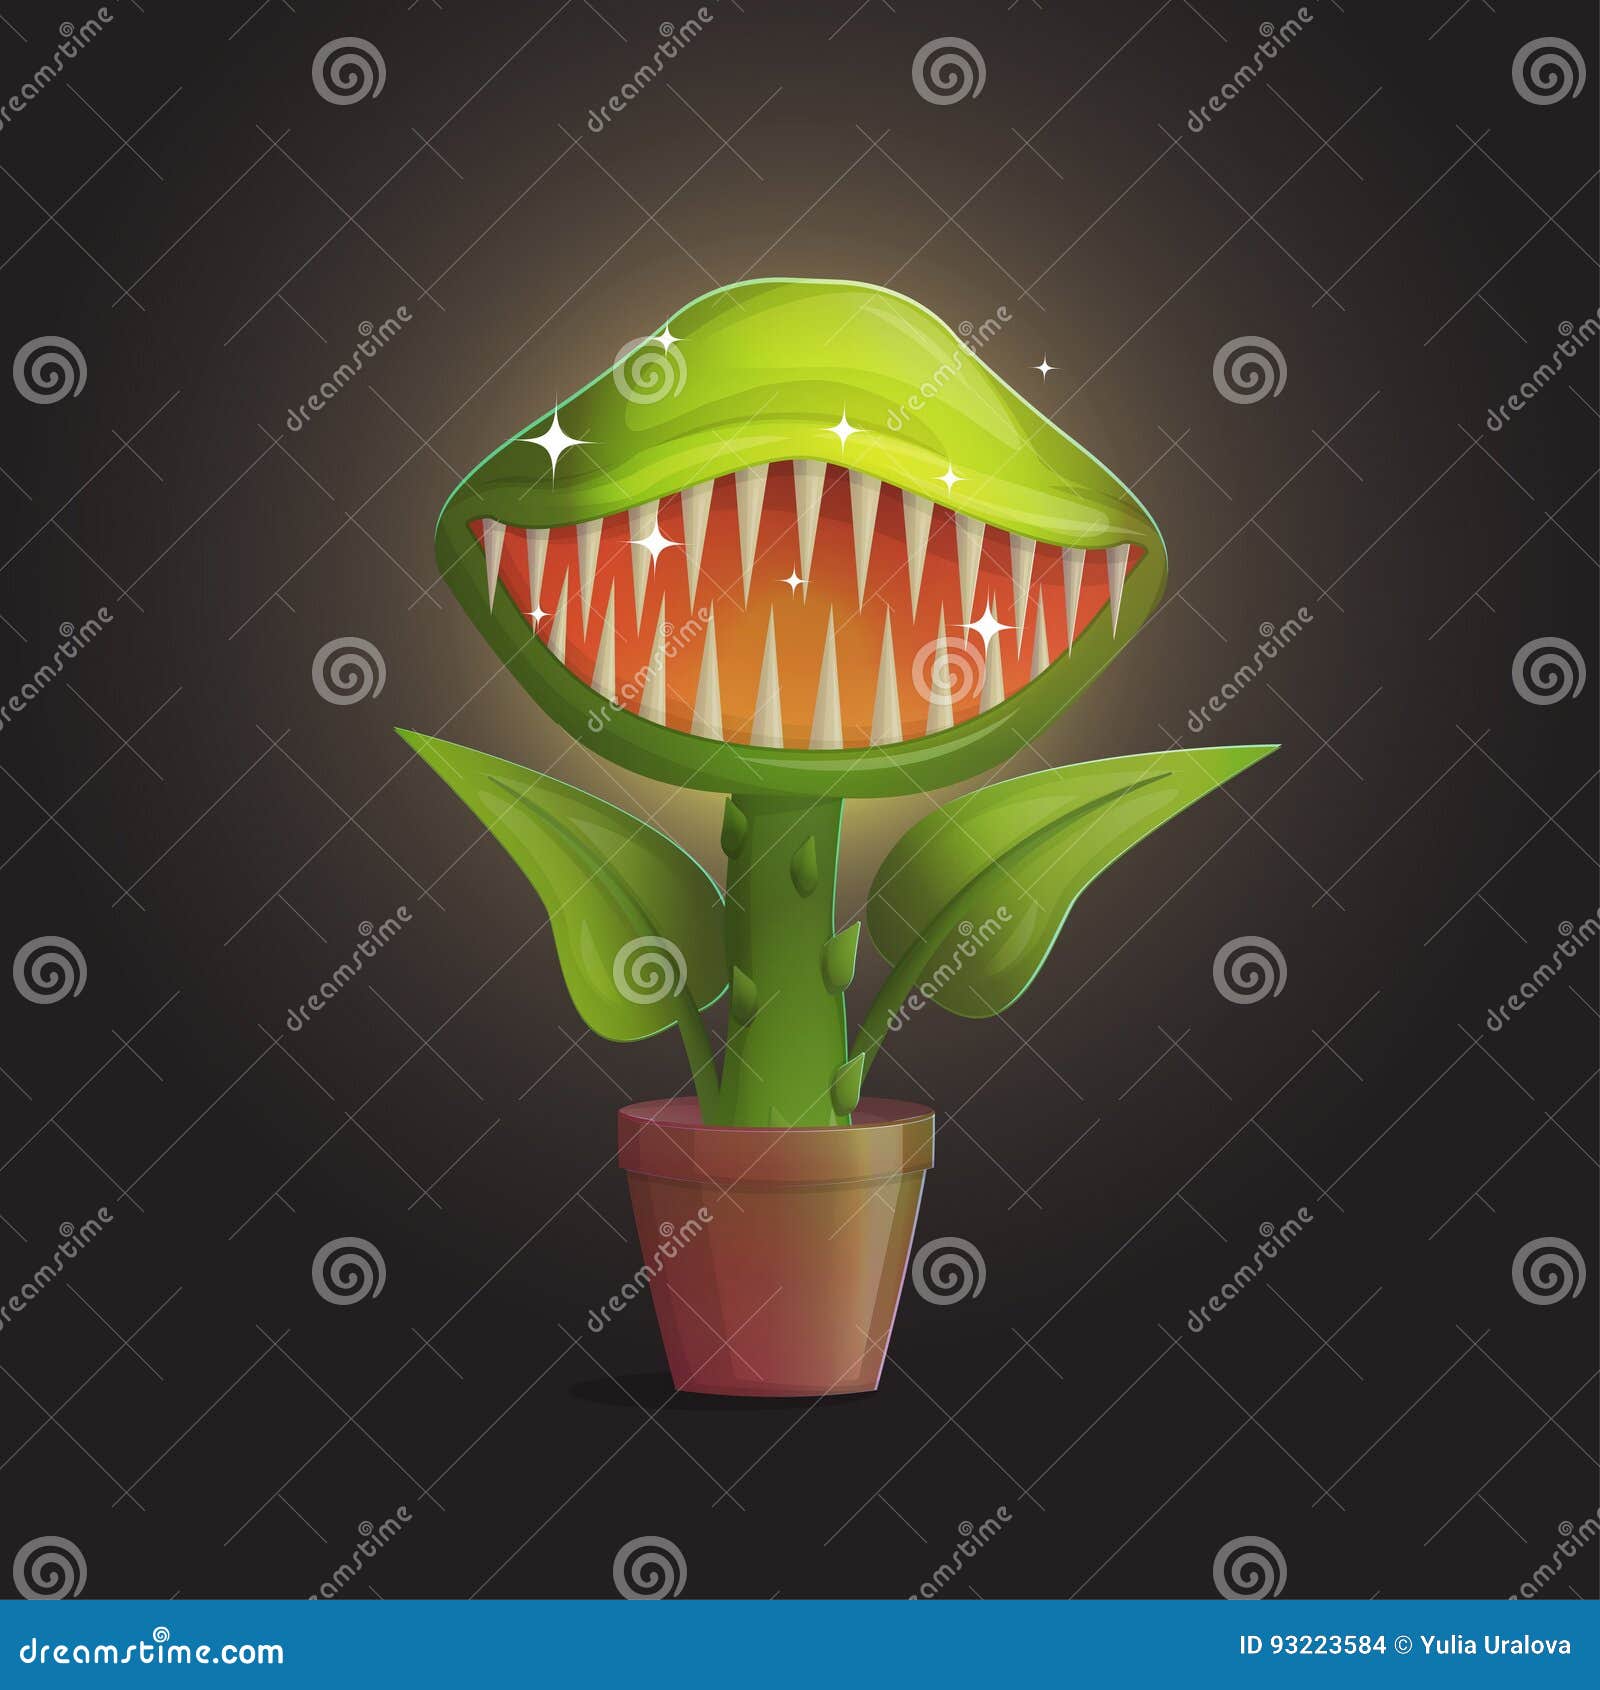 venus flytrap flower carnivorous plant 